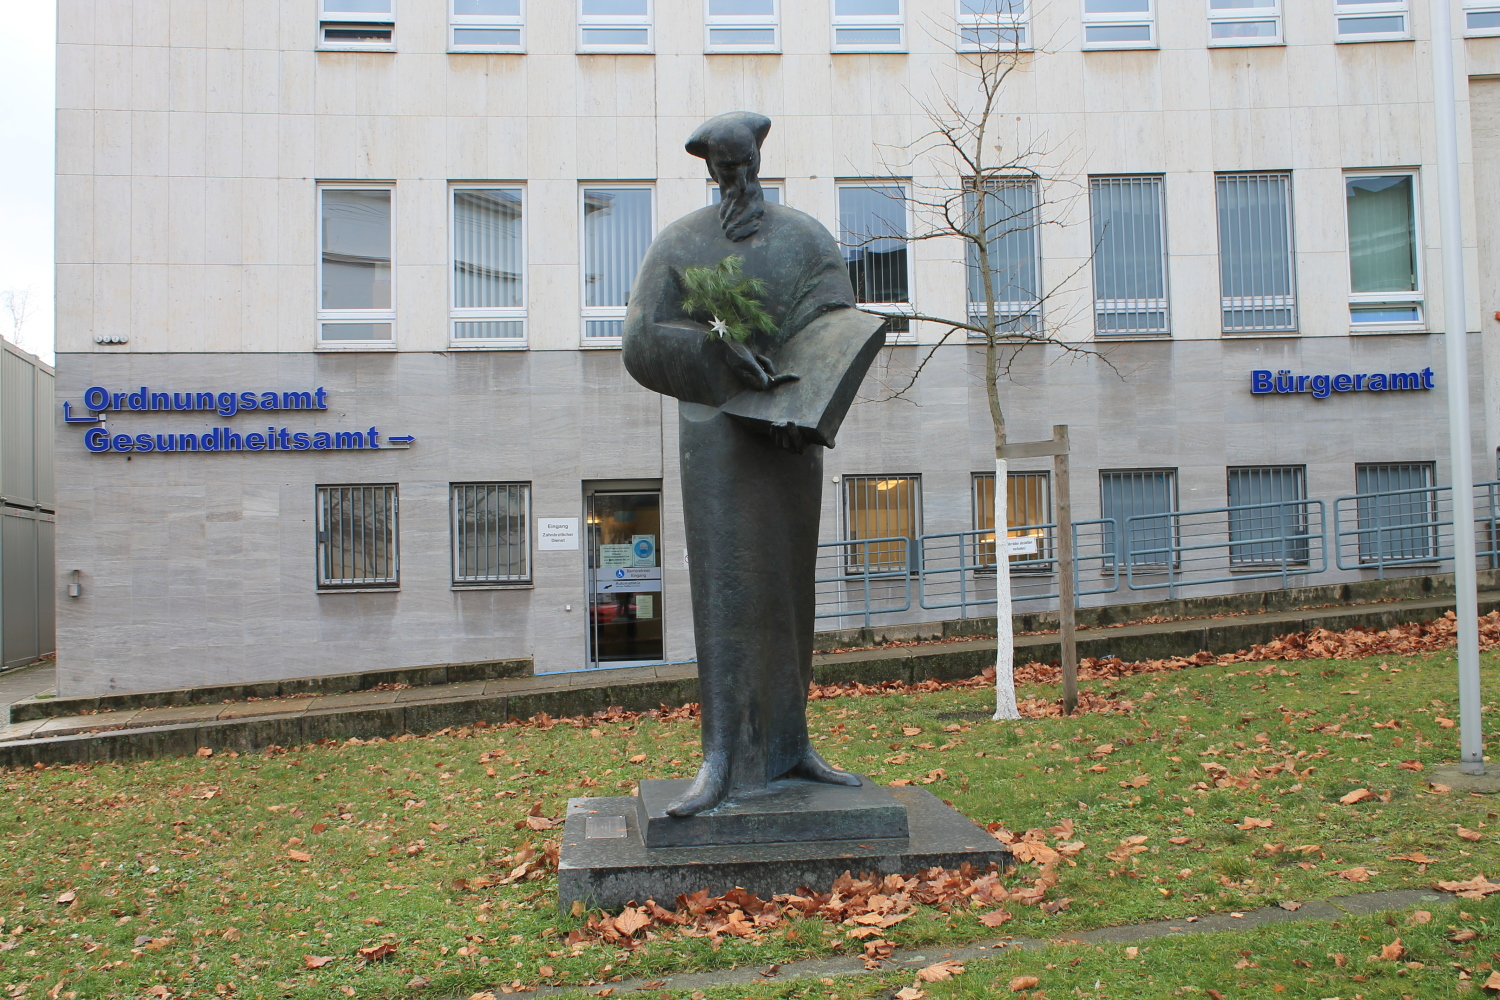 Julius-Morgenroth-Platz